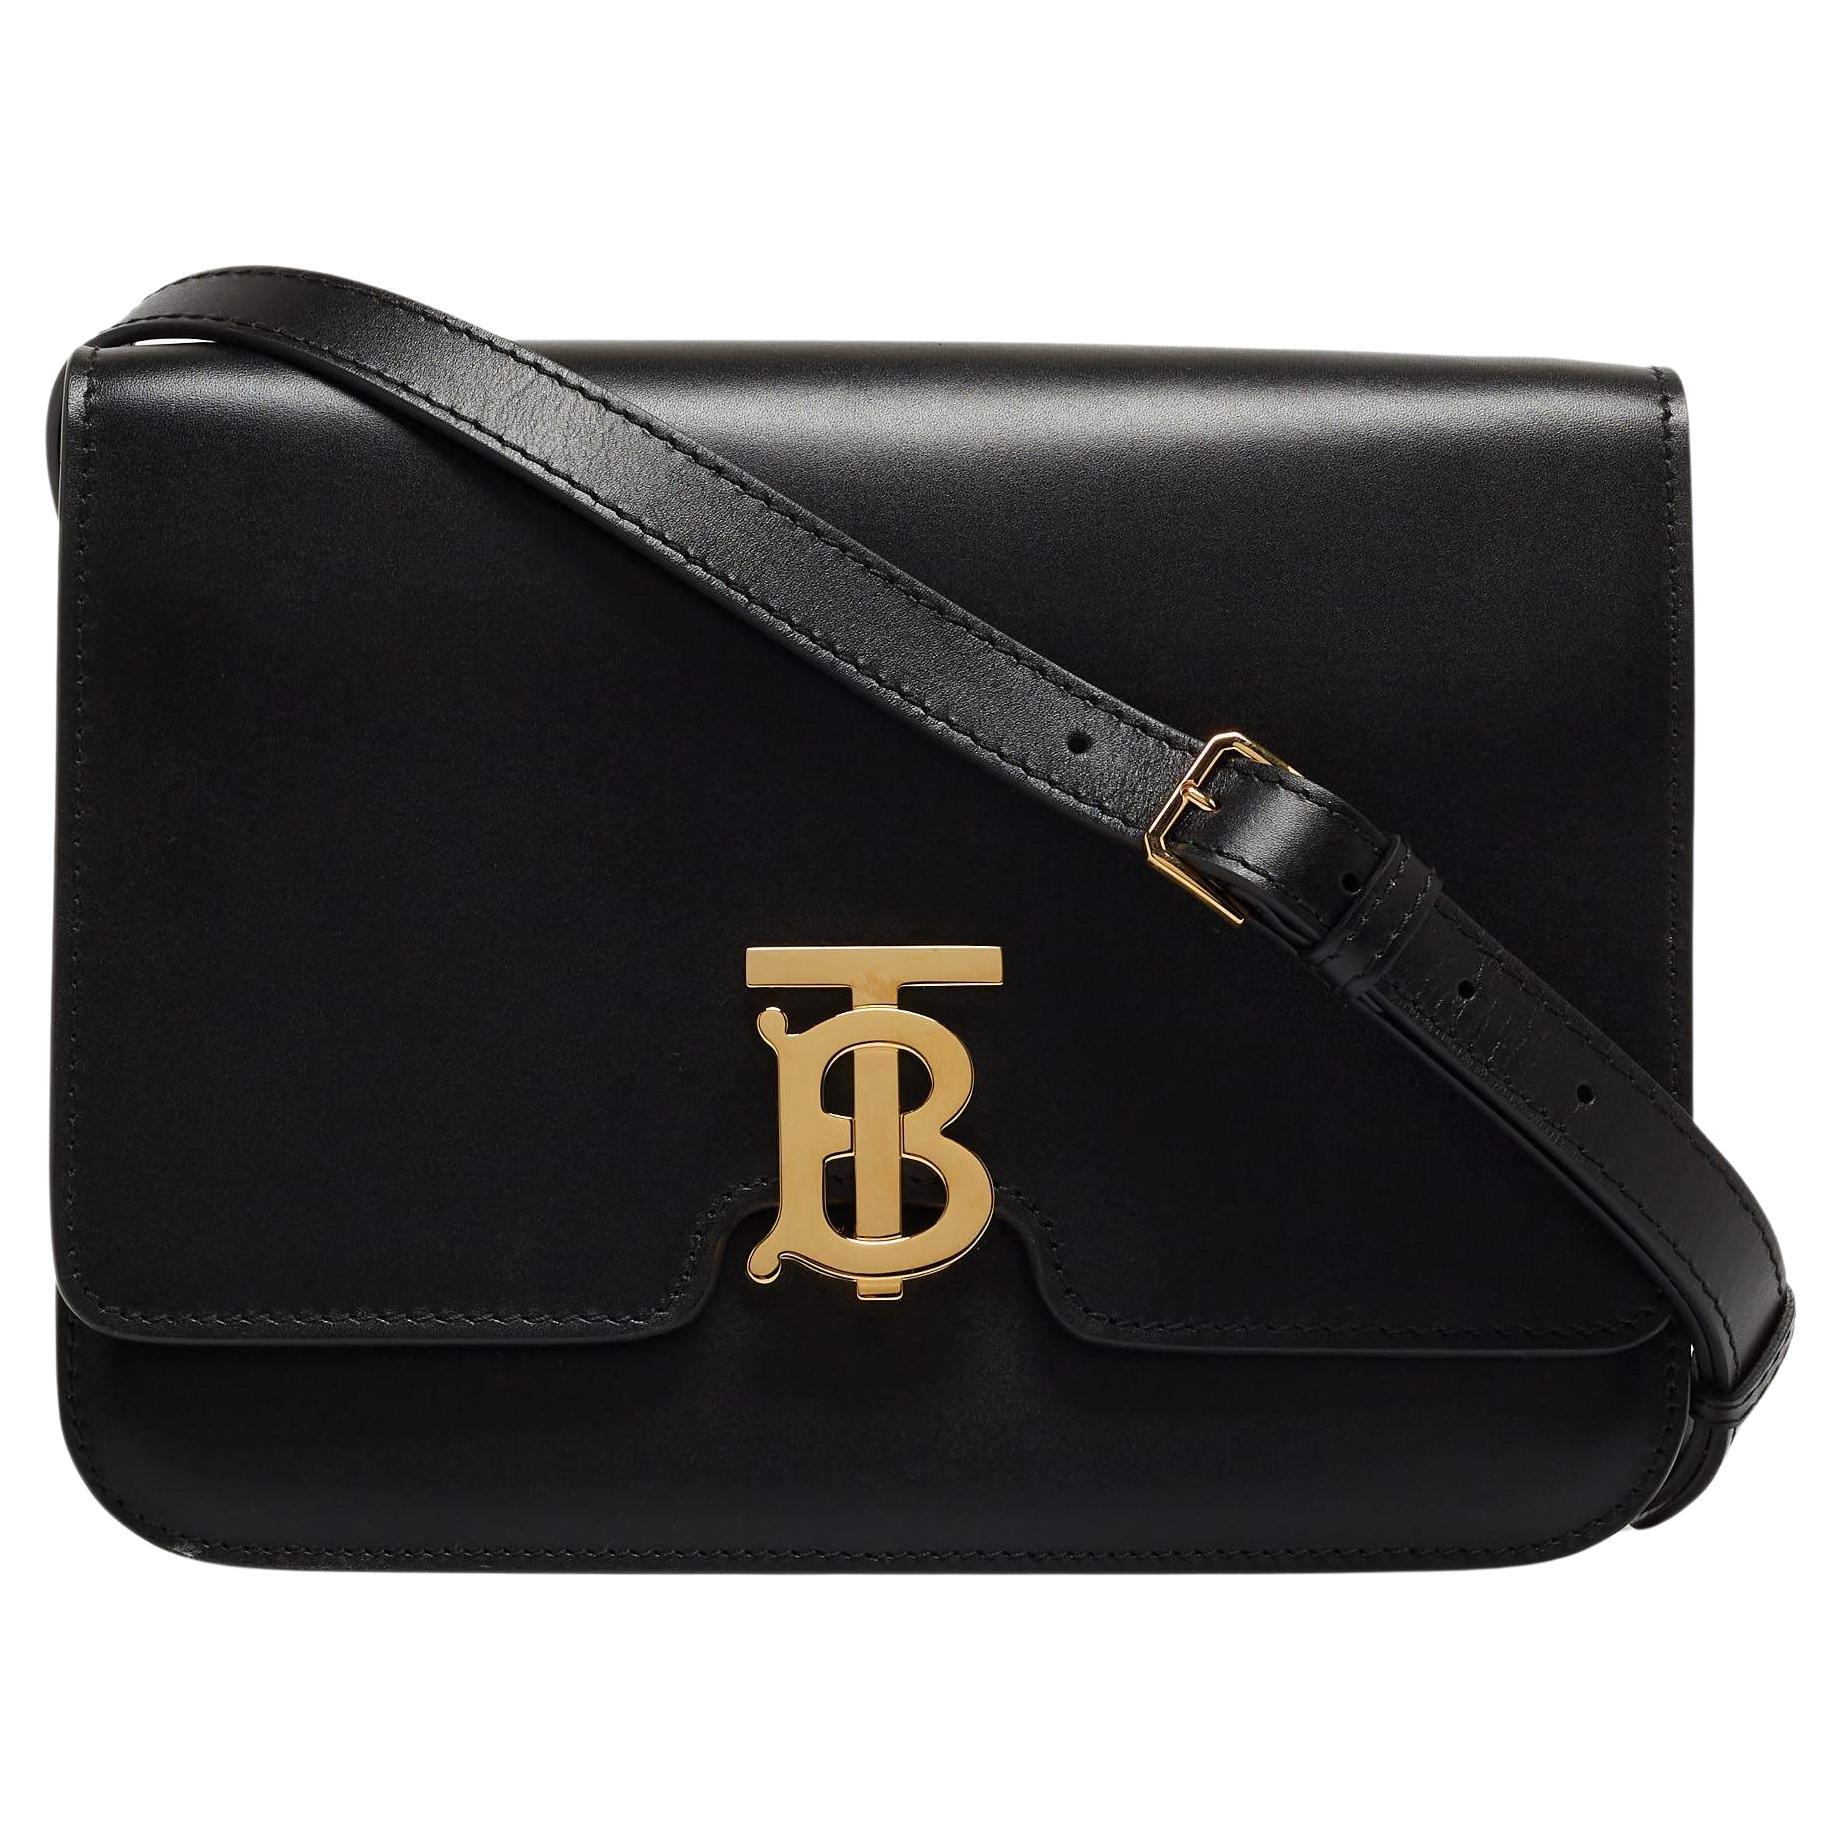 Burberry Black Leather Medium TB Shoulder Bag For Sale